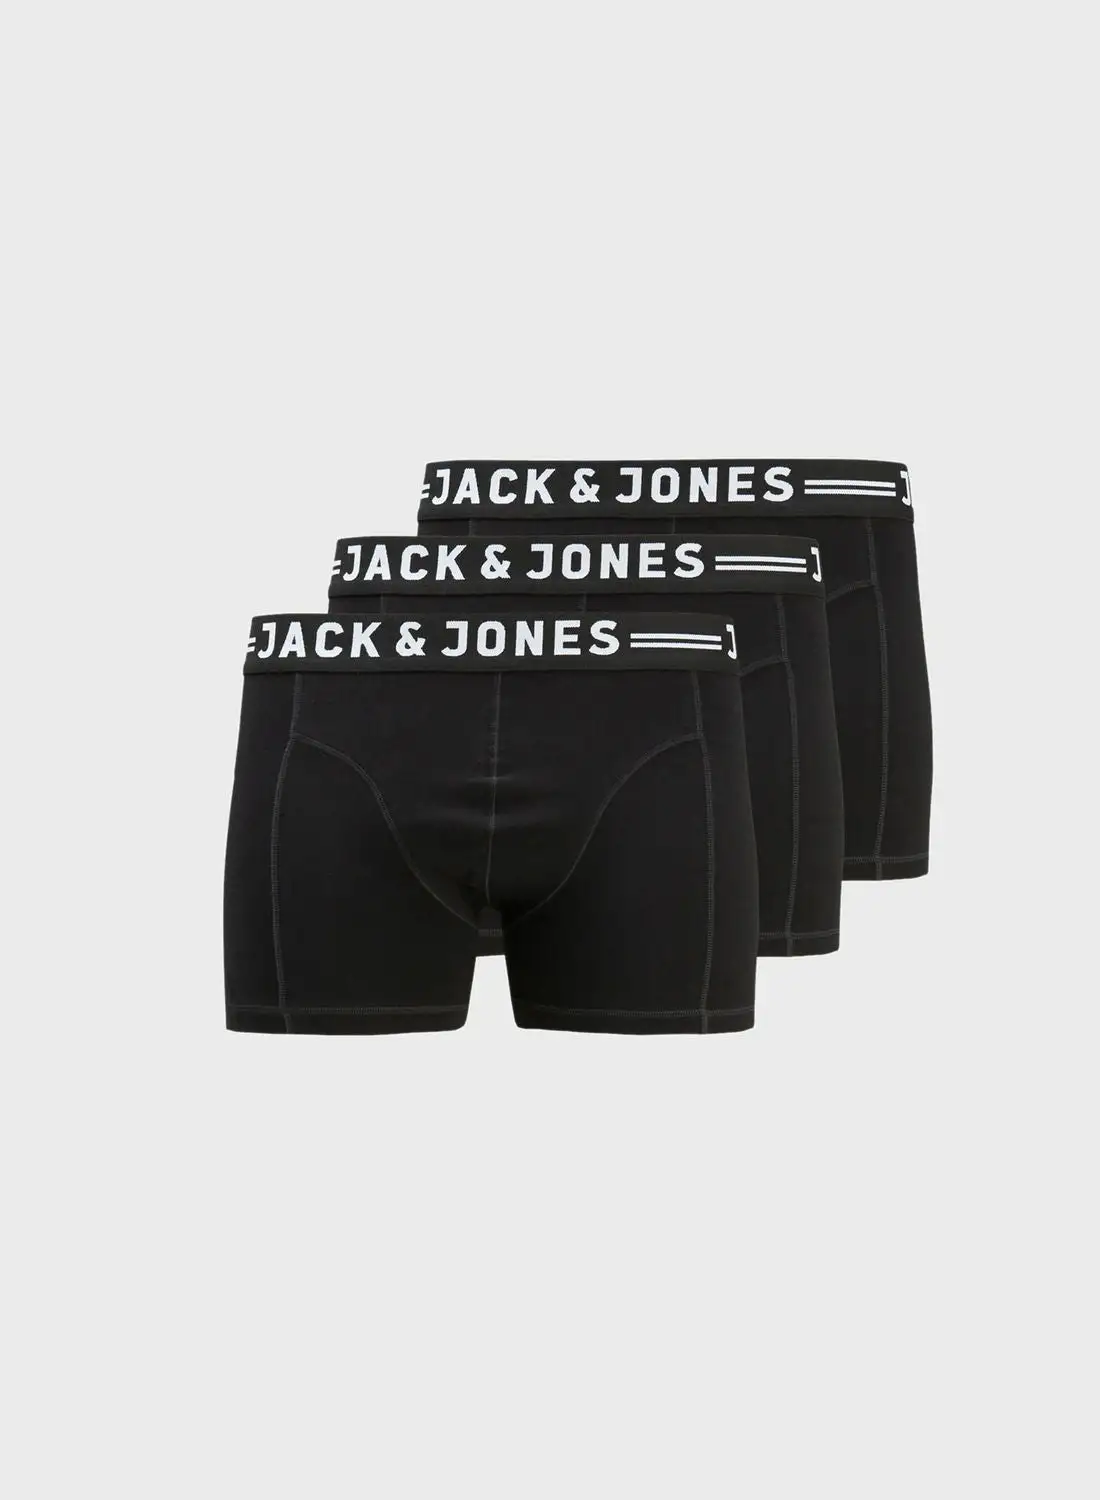 JACK & JONES 3 Pack Logo Band Trunks